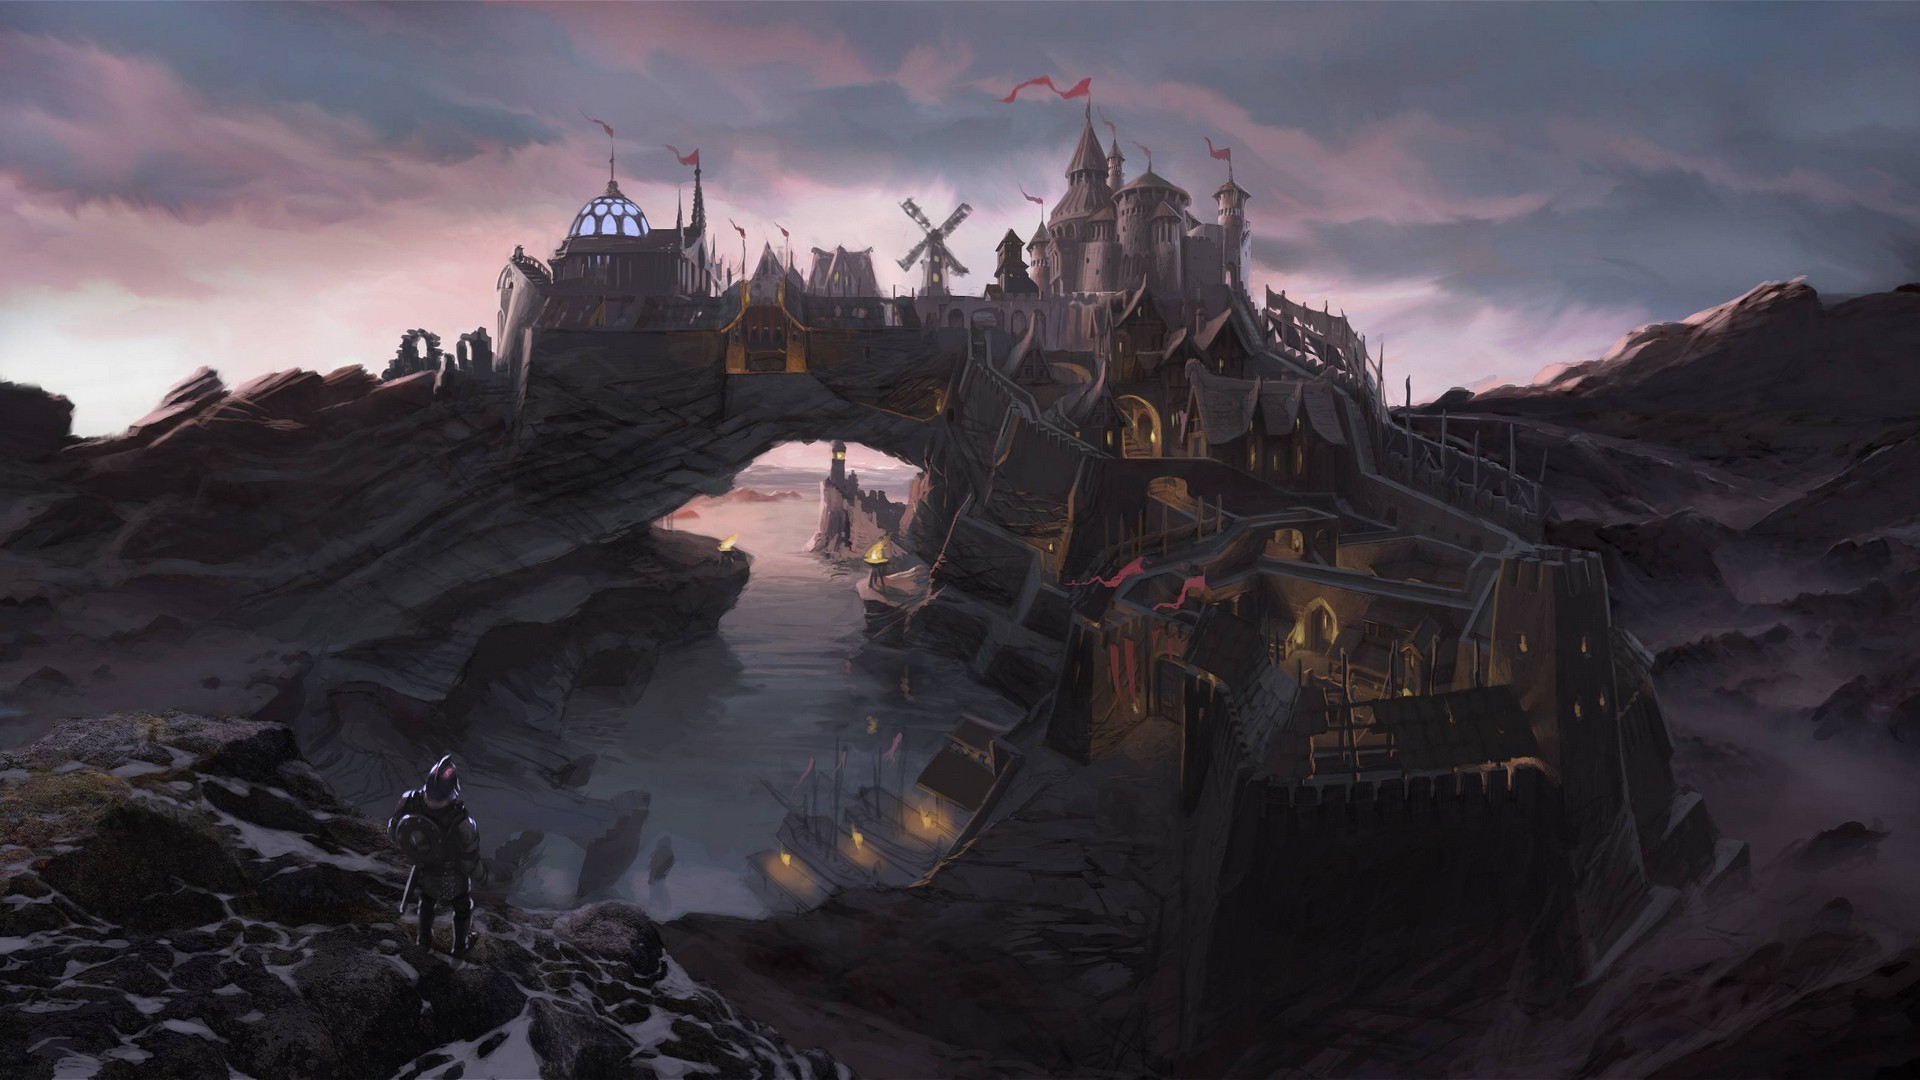 Trong thế giới tưởng tượng của trò chơi The Elder Scrolls V: Skyrim, thành phố xưa cũ, nghệ thuật tưởng tượng và trò chơi video kết hợp tạo nên một thế giới tuyệt vời và đầy mê hoặc. Hãy khám phá những bức tranh Fantasy Art tuyệt đẹp này để truyền cảm hứng mới cho bạn!